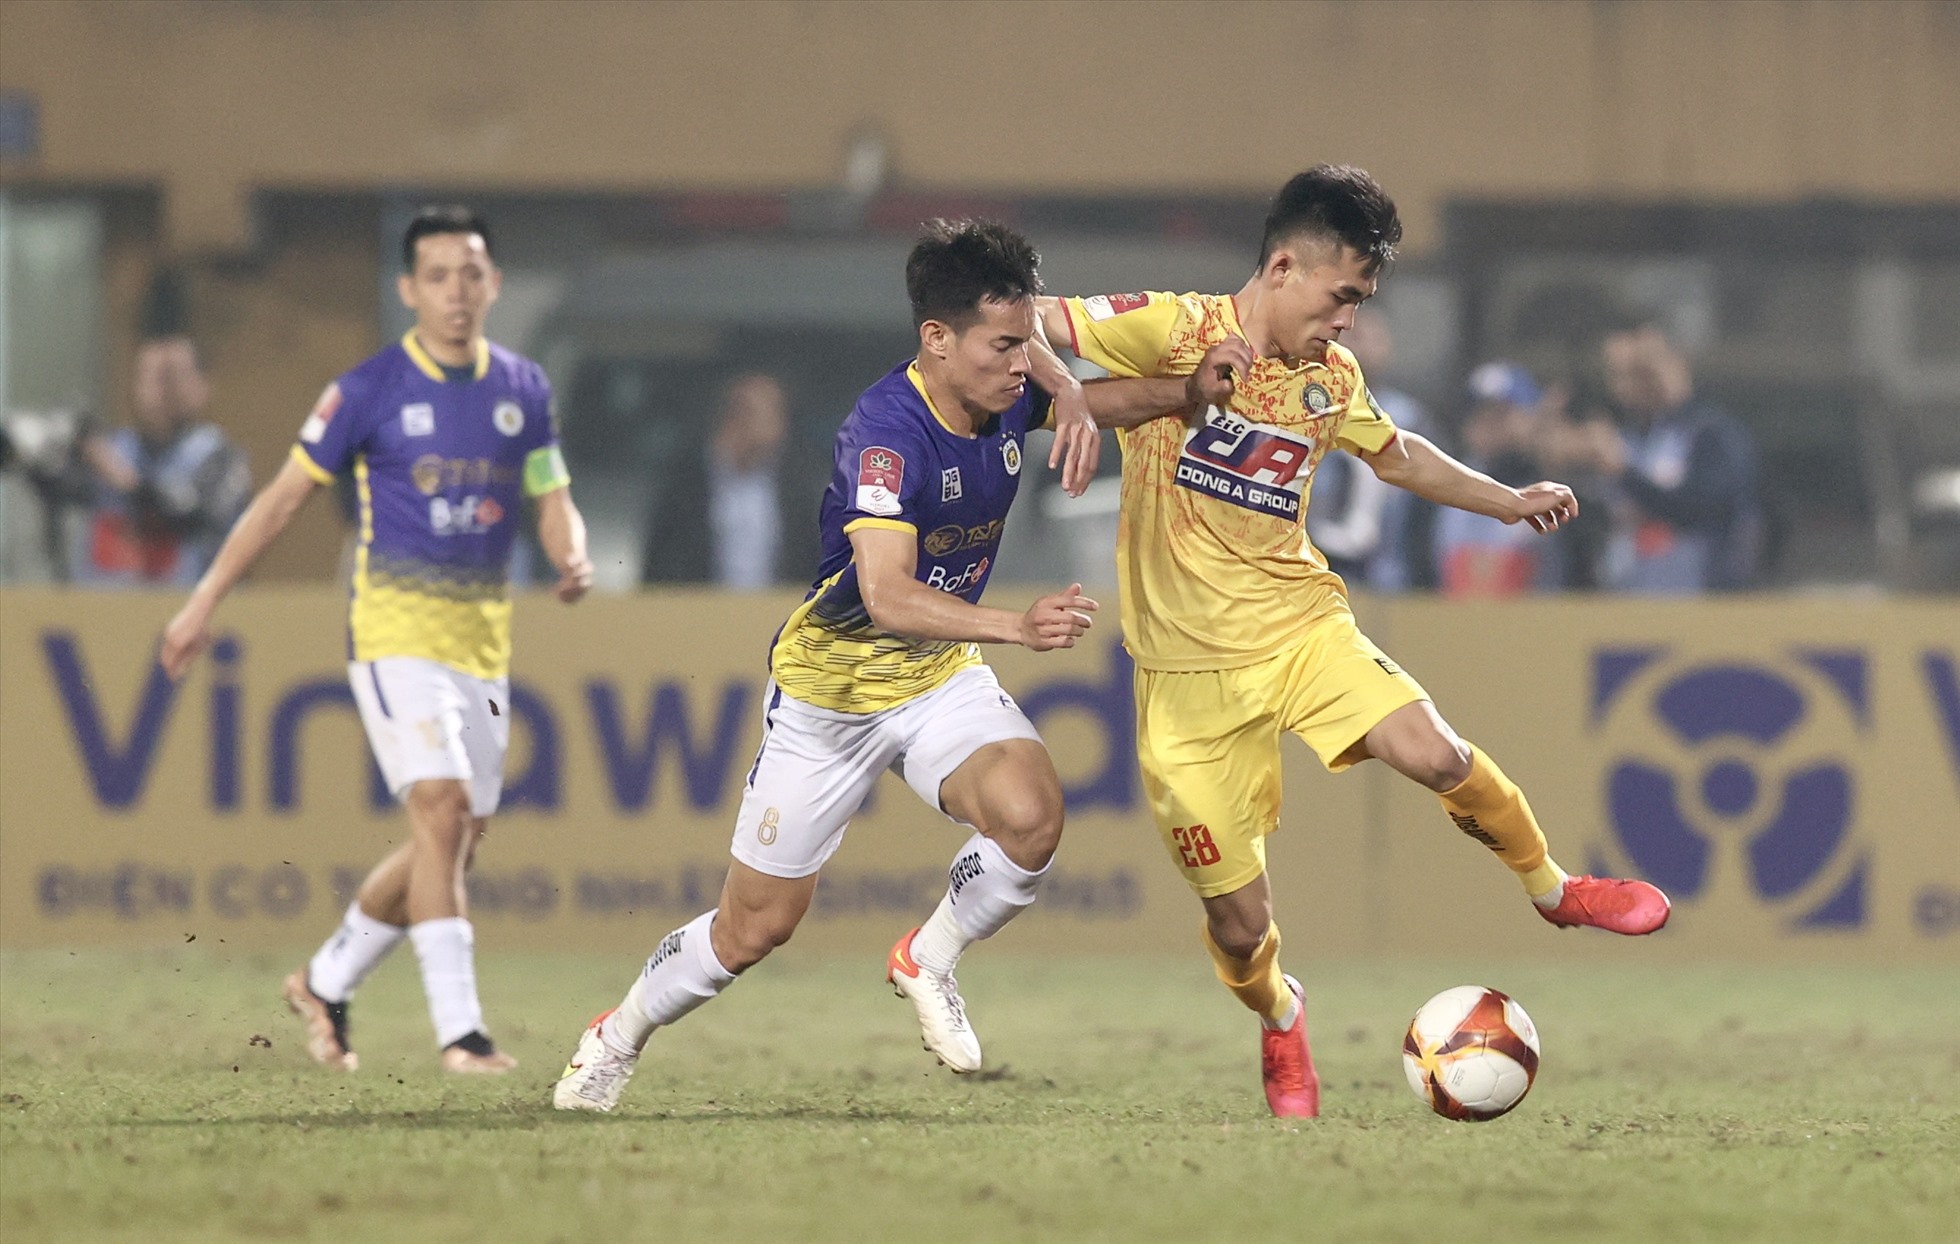 Câu lạc bộ Thanh Hoá gây sức ép lớn lên phần sân của Hà Nội nhằm tìm kiếm bàn mở tỉ số. Ảnh: Minh Dân